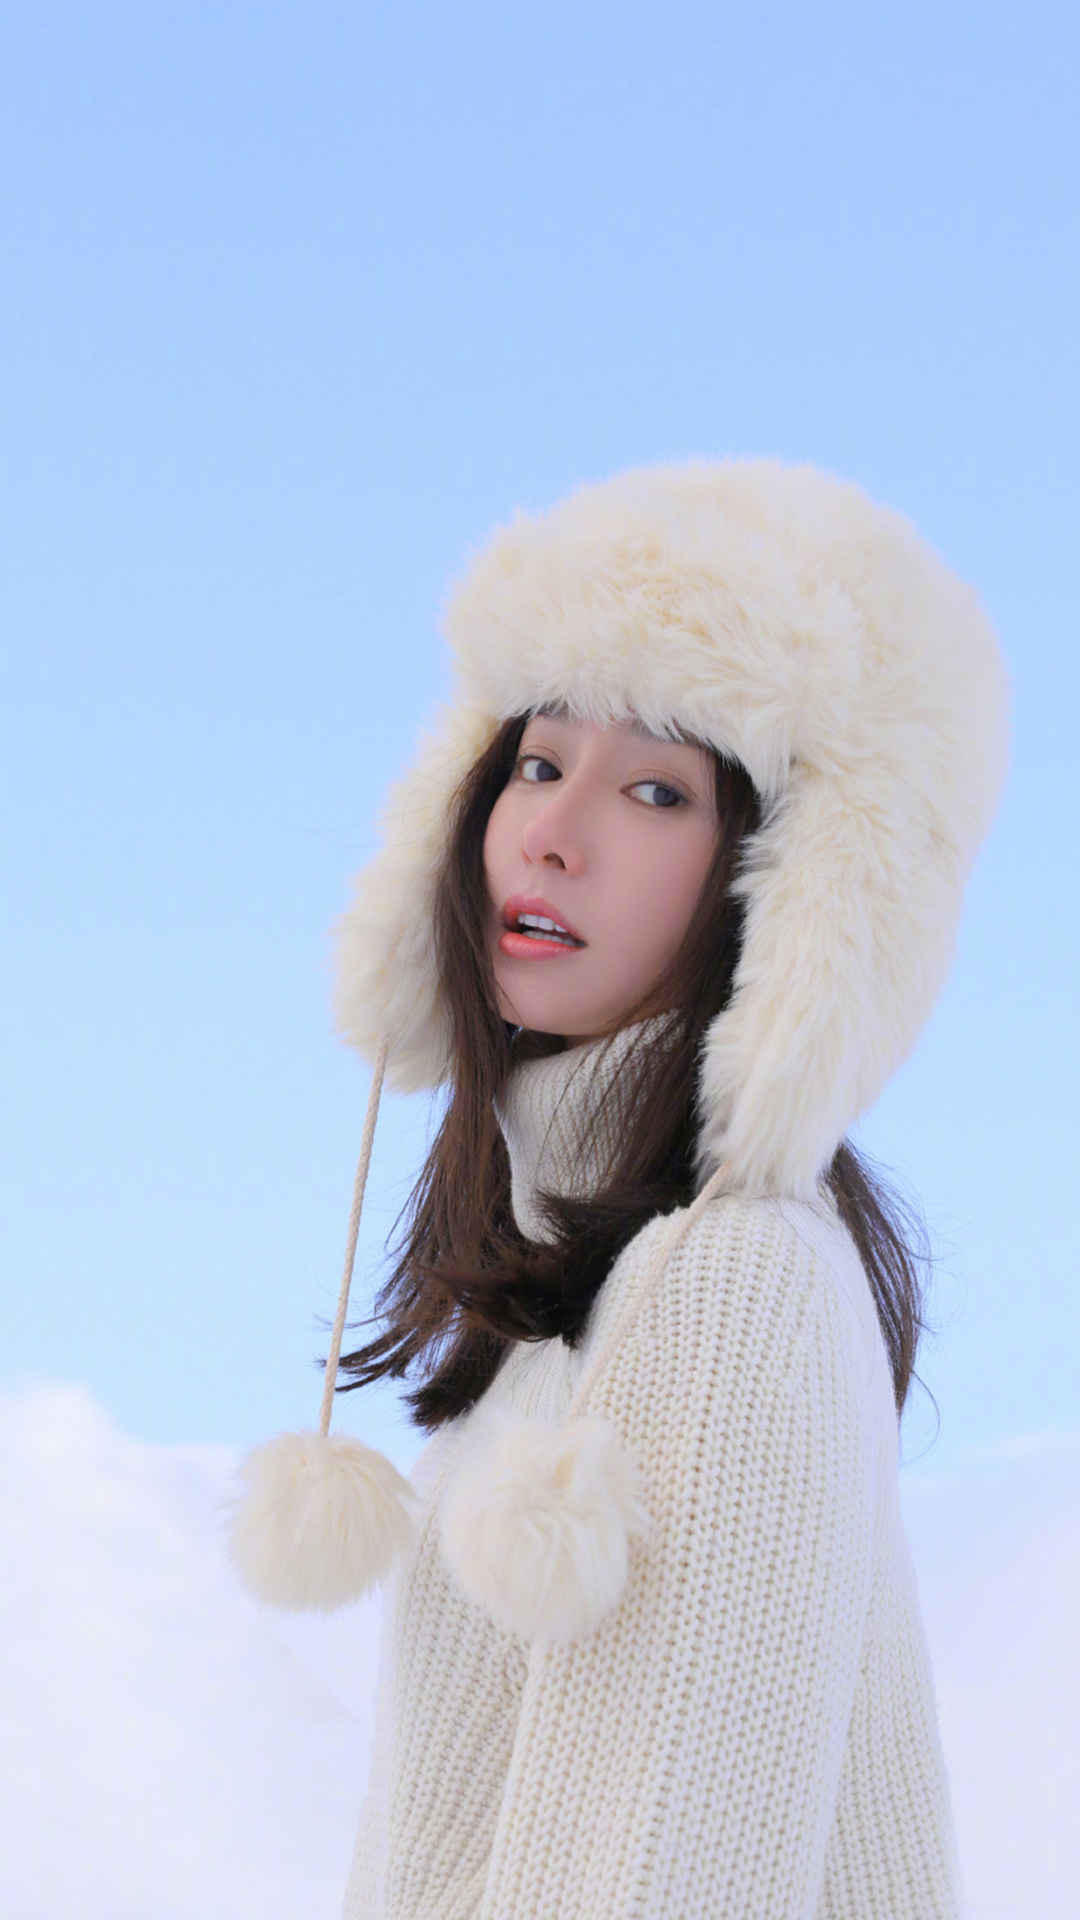 美女秦岚大棉帽子欢快踏雪的冬季写真手机壁纸-